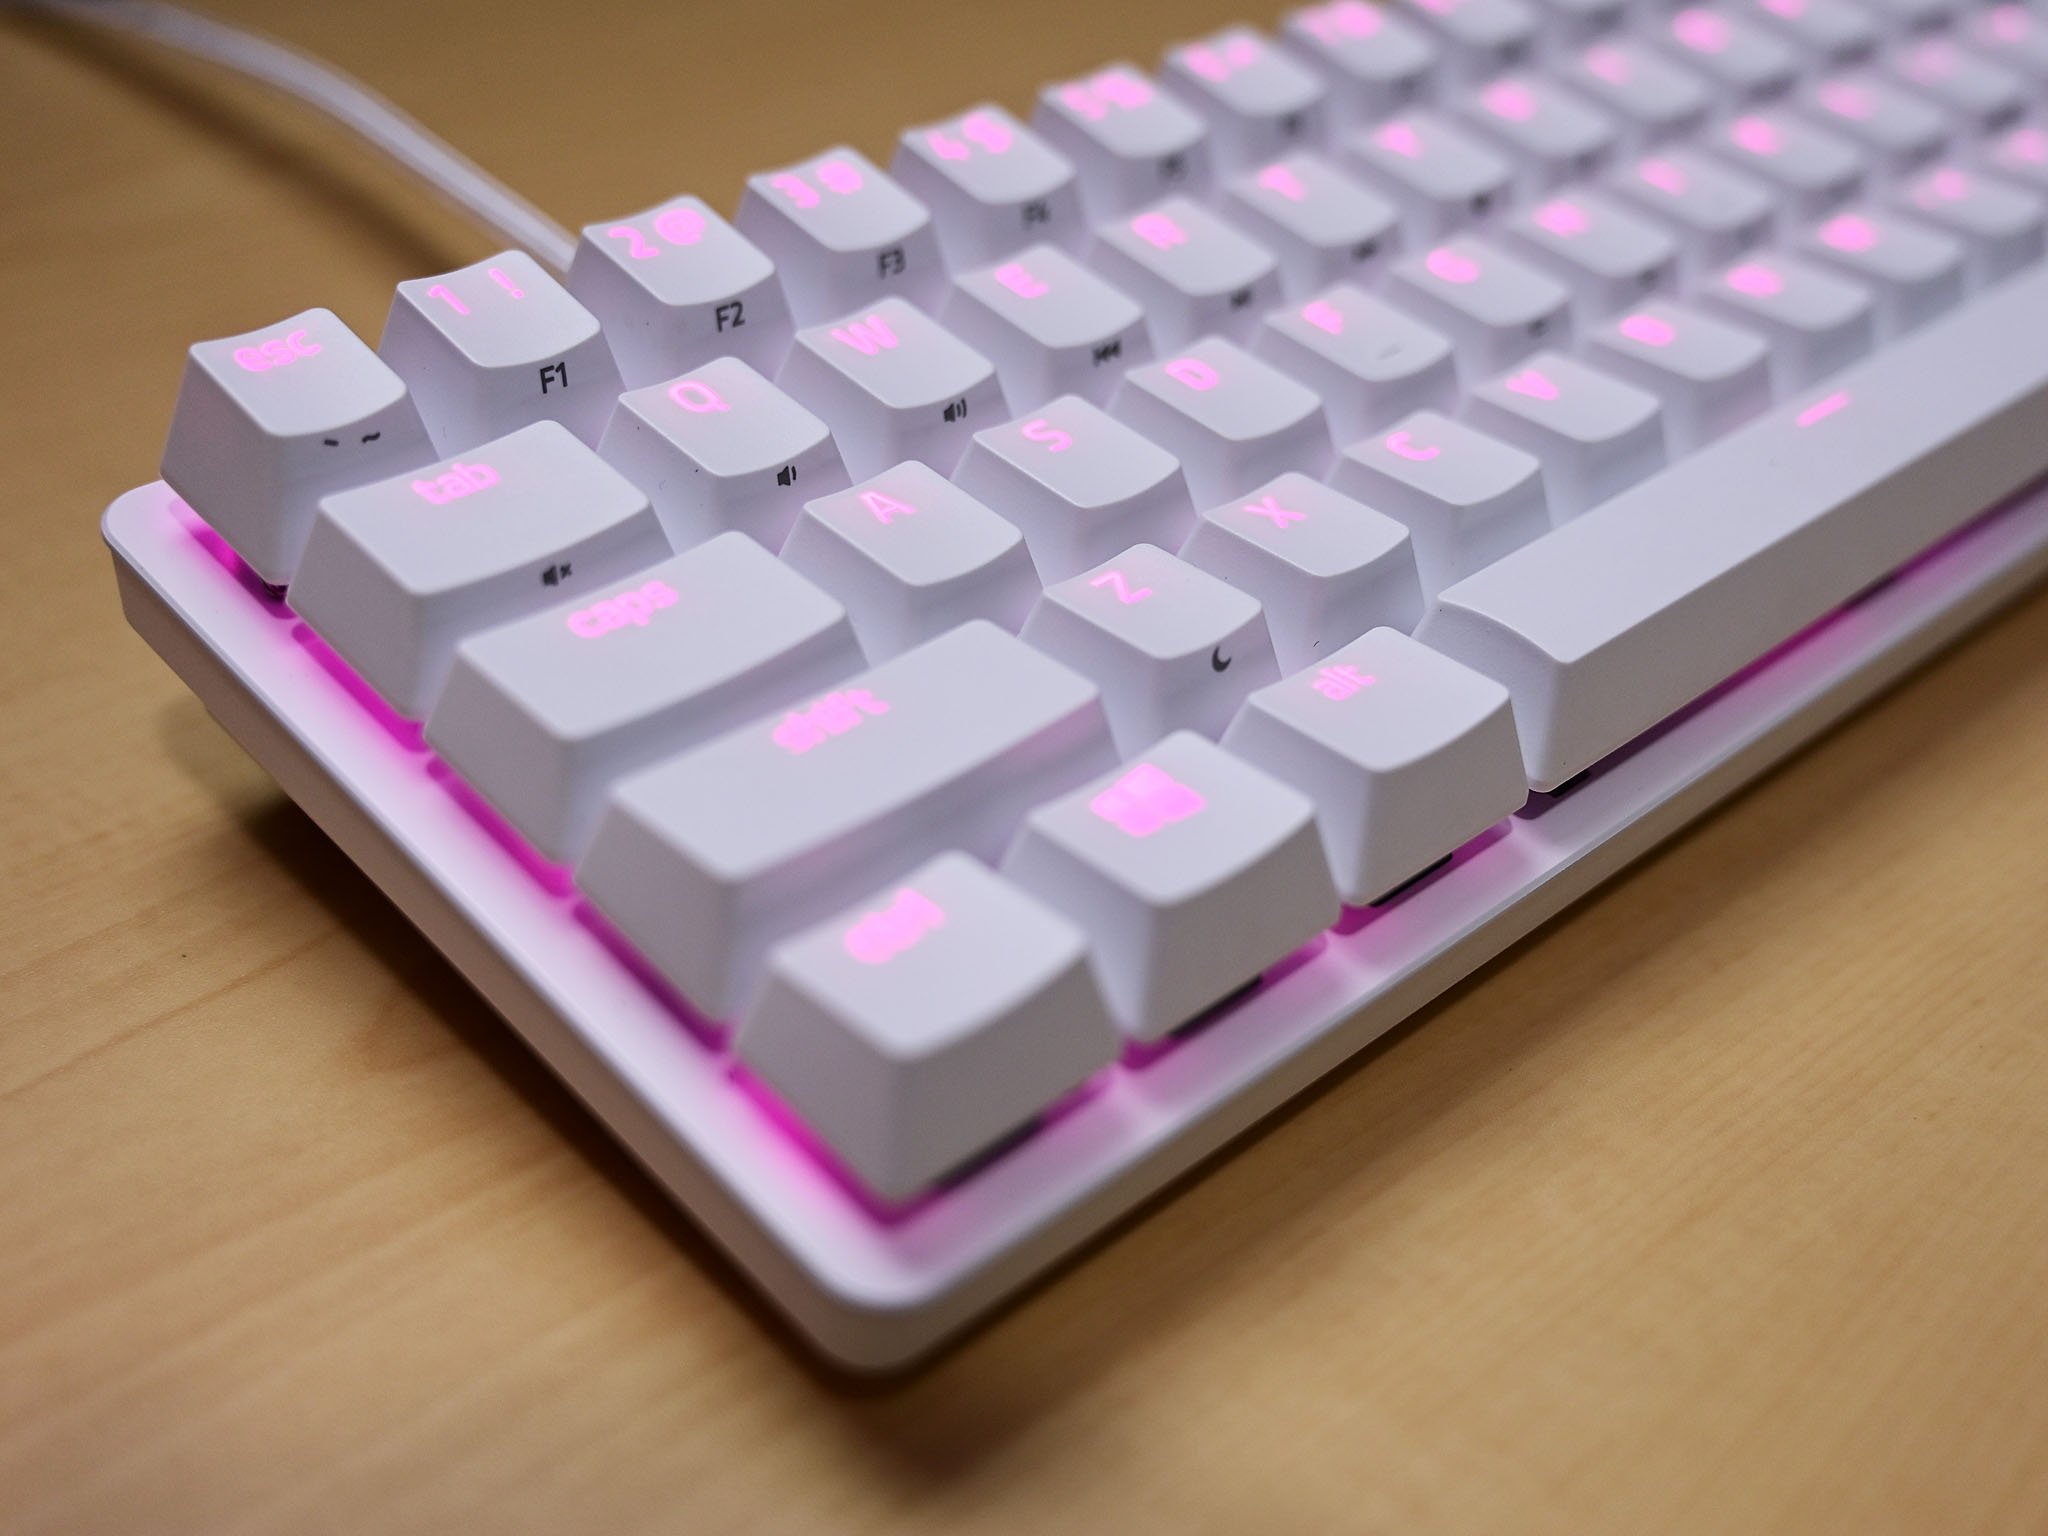 Razer Huntsman Mini review: A tiny but efficient minimalist keyboard